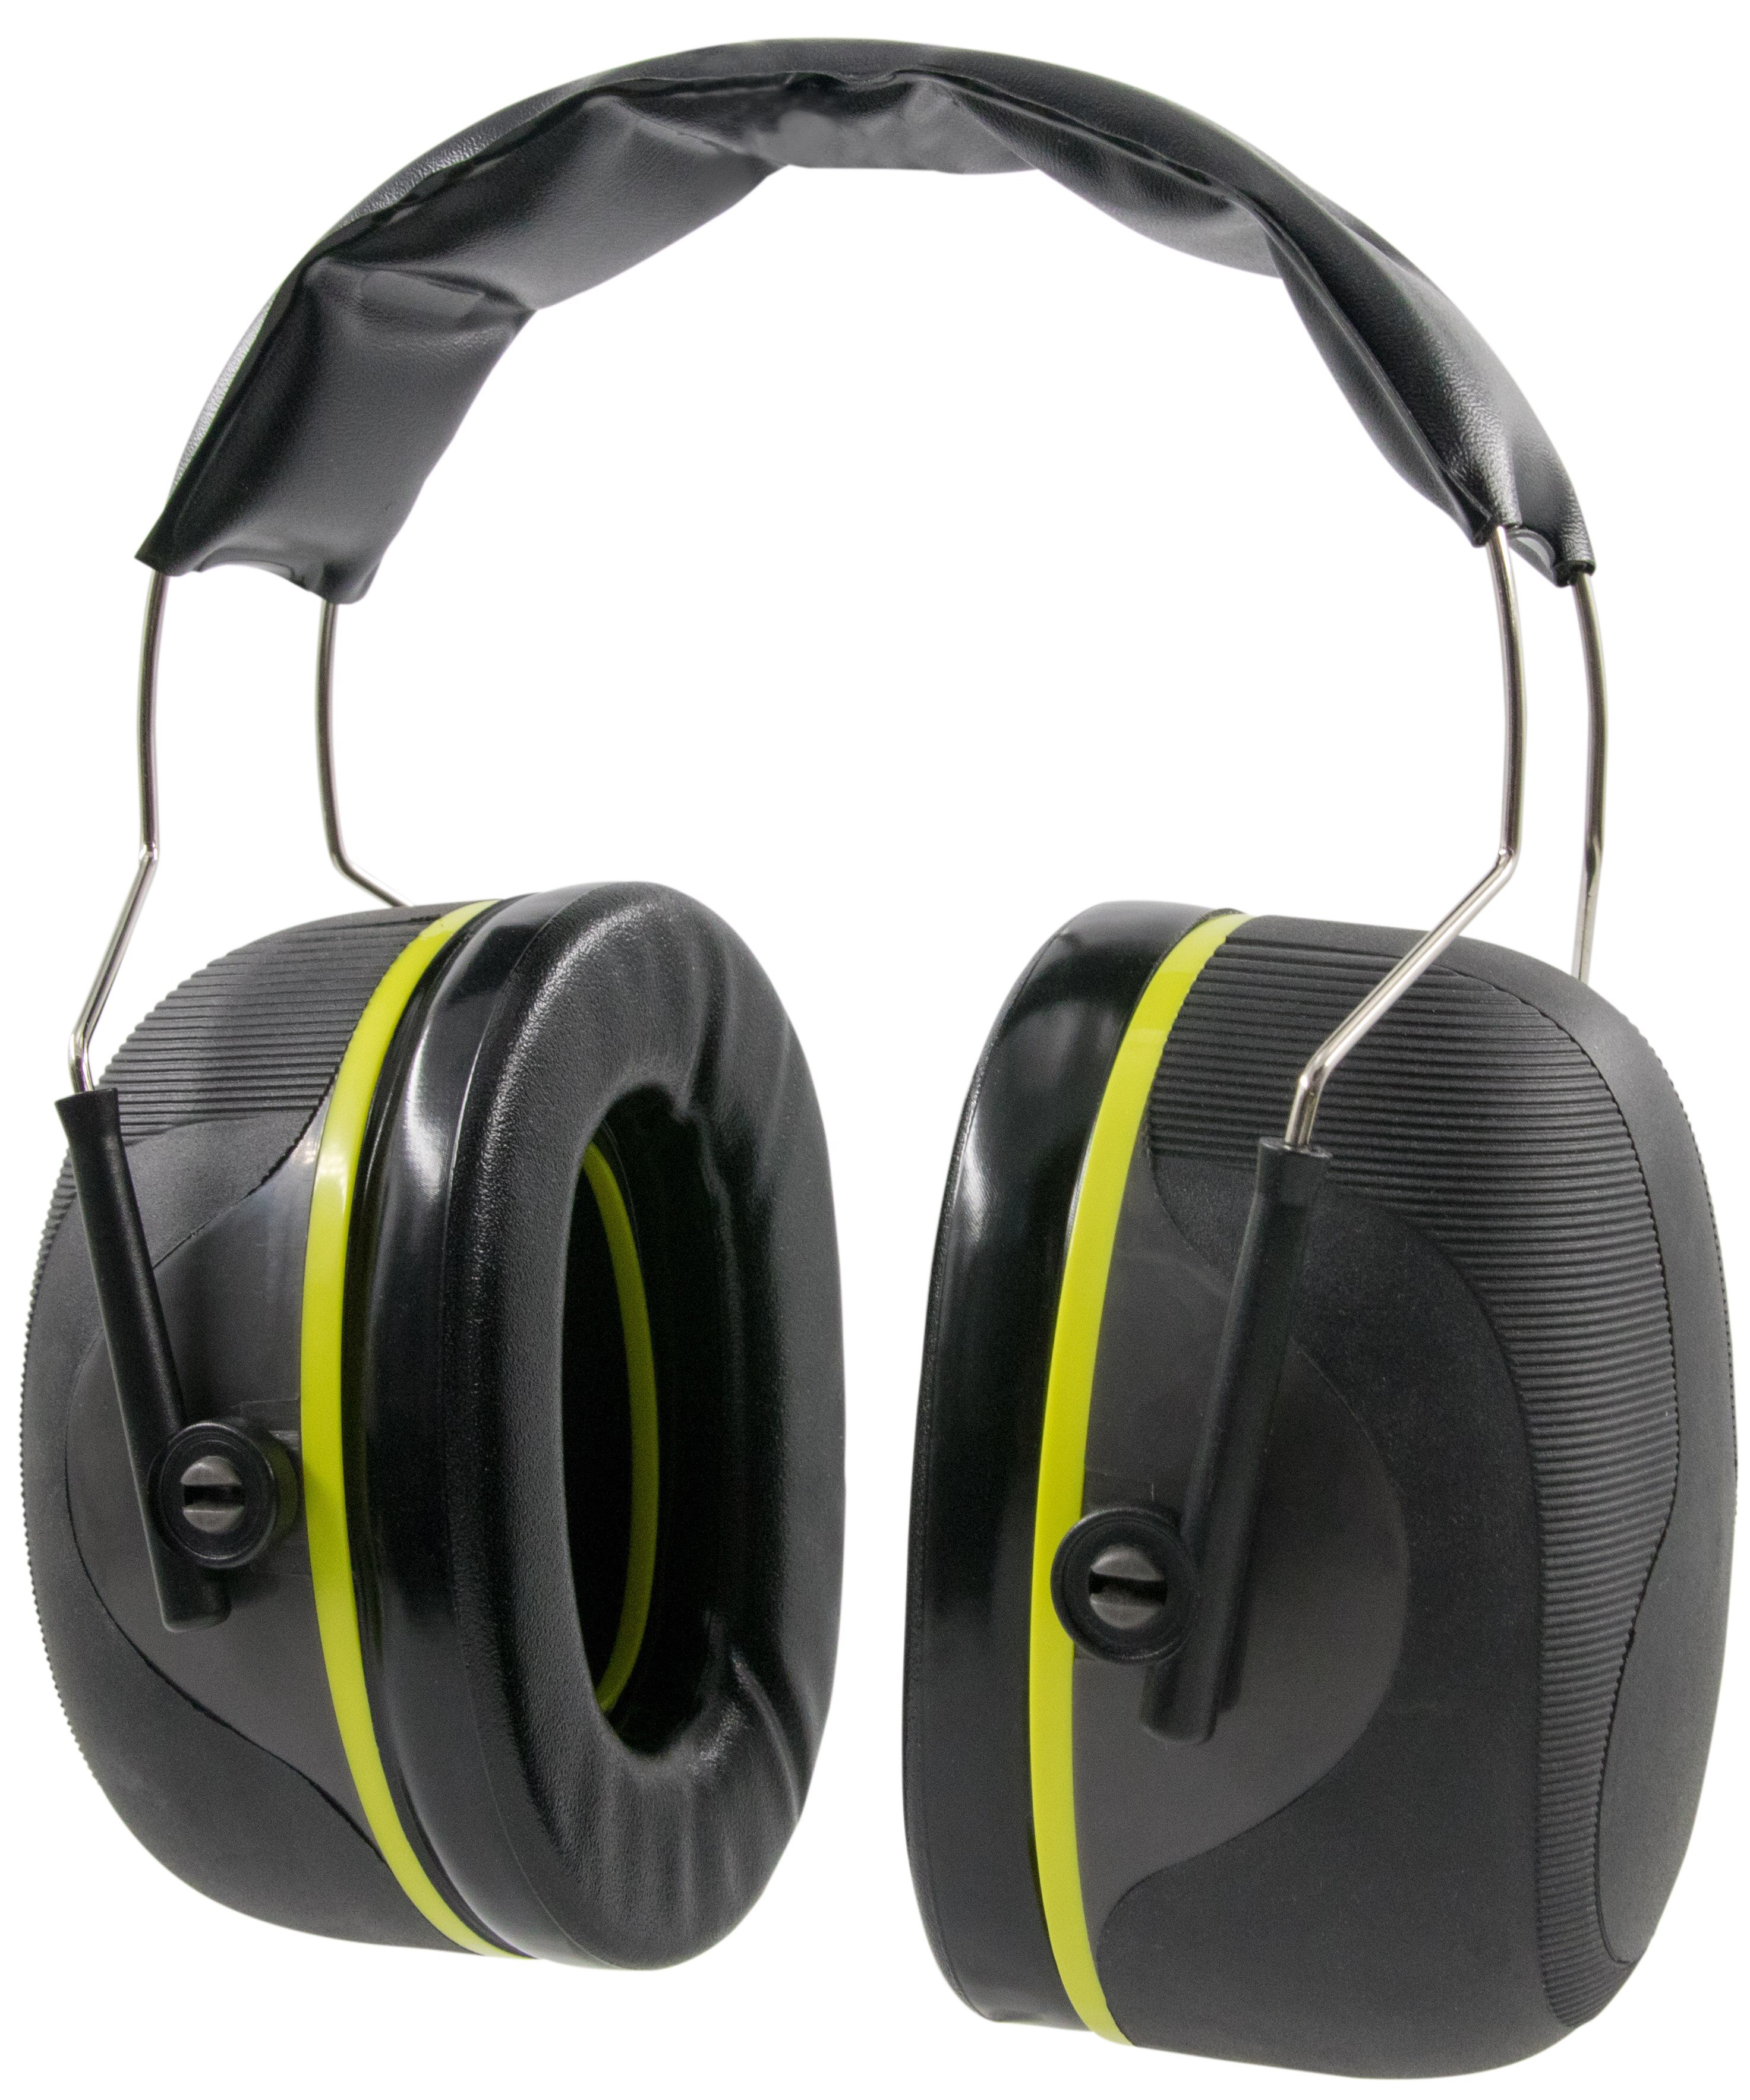 Dubbele-Shell Structuur Passieve oorbeschermers NRR 28 Optimale Comfort & Efficiency